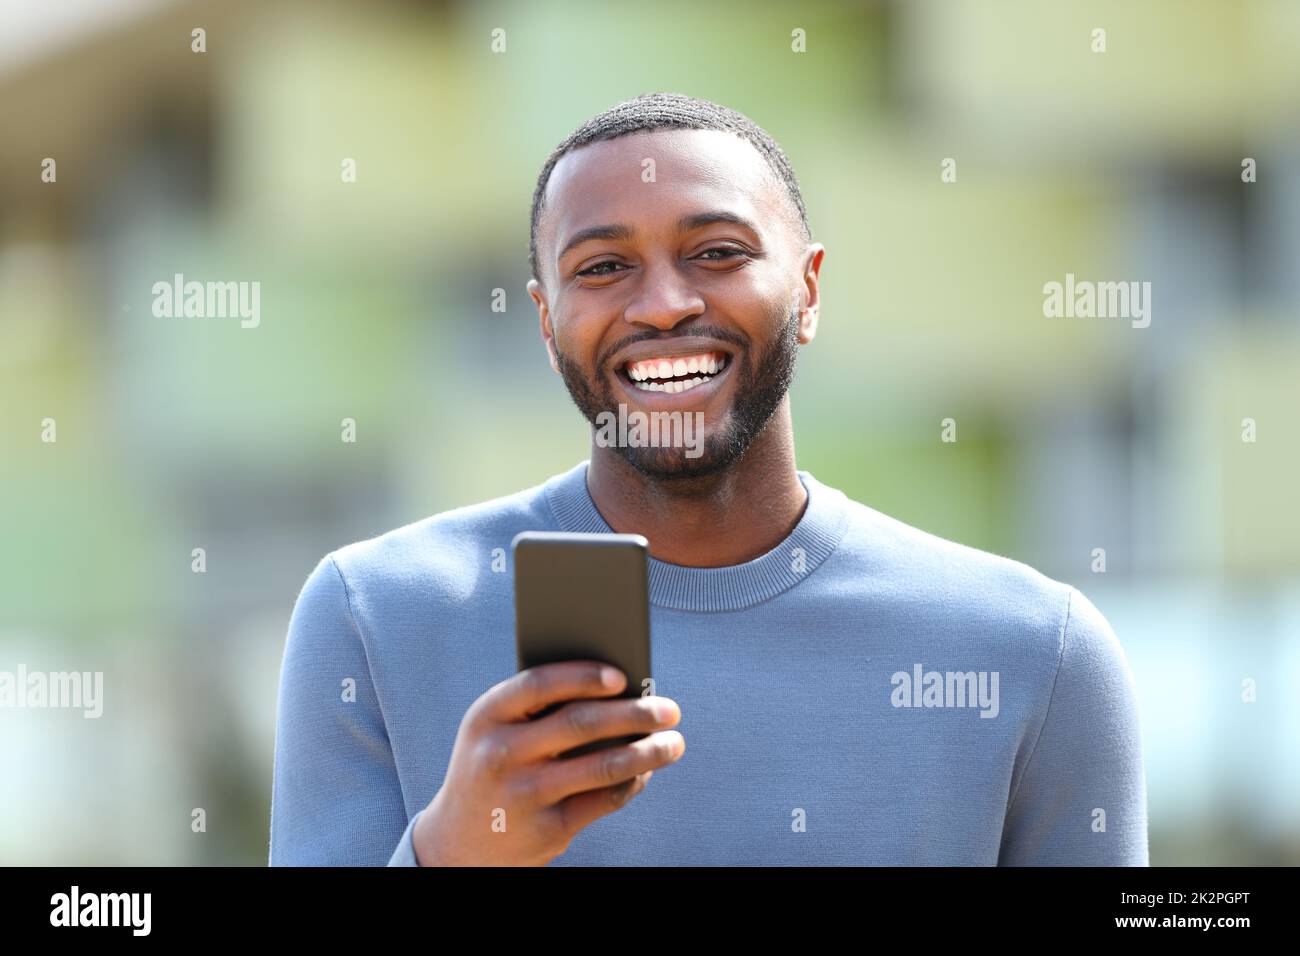 Un homme heureux avec une peau noire riant en tenant le téléphone vous regardant Banque D'Images